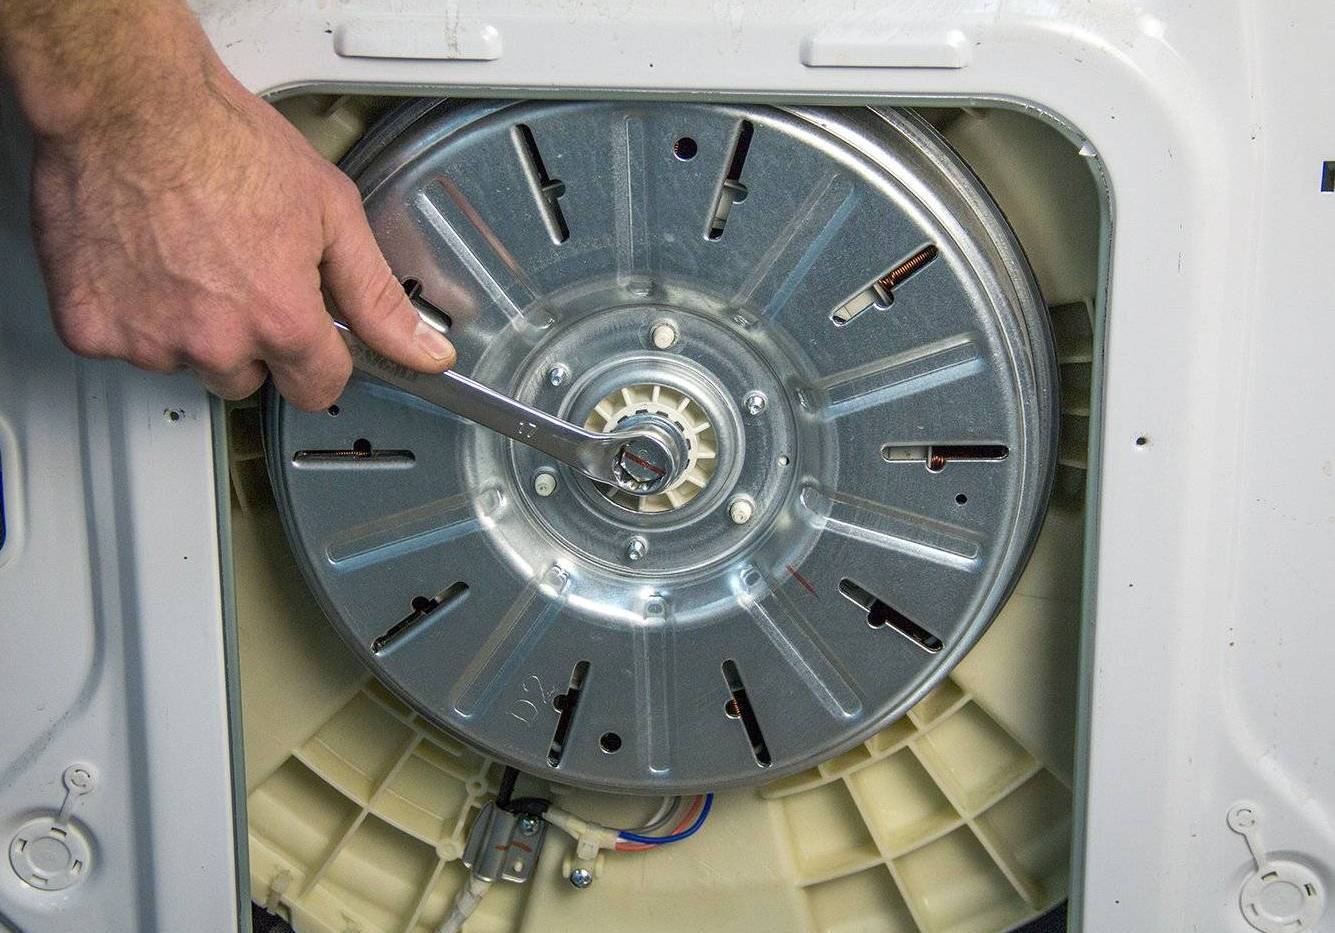 Ремонт и обслуживание стиральной машины элджи своими руками